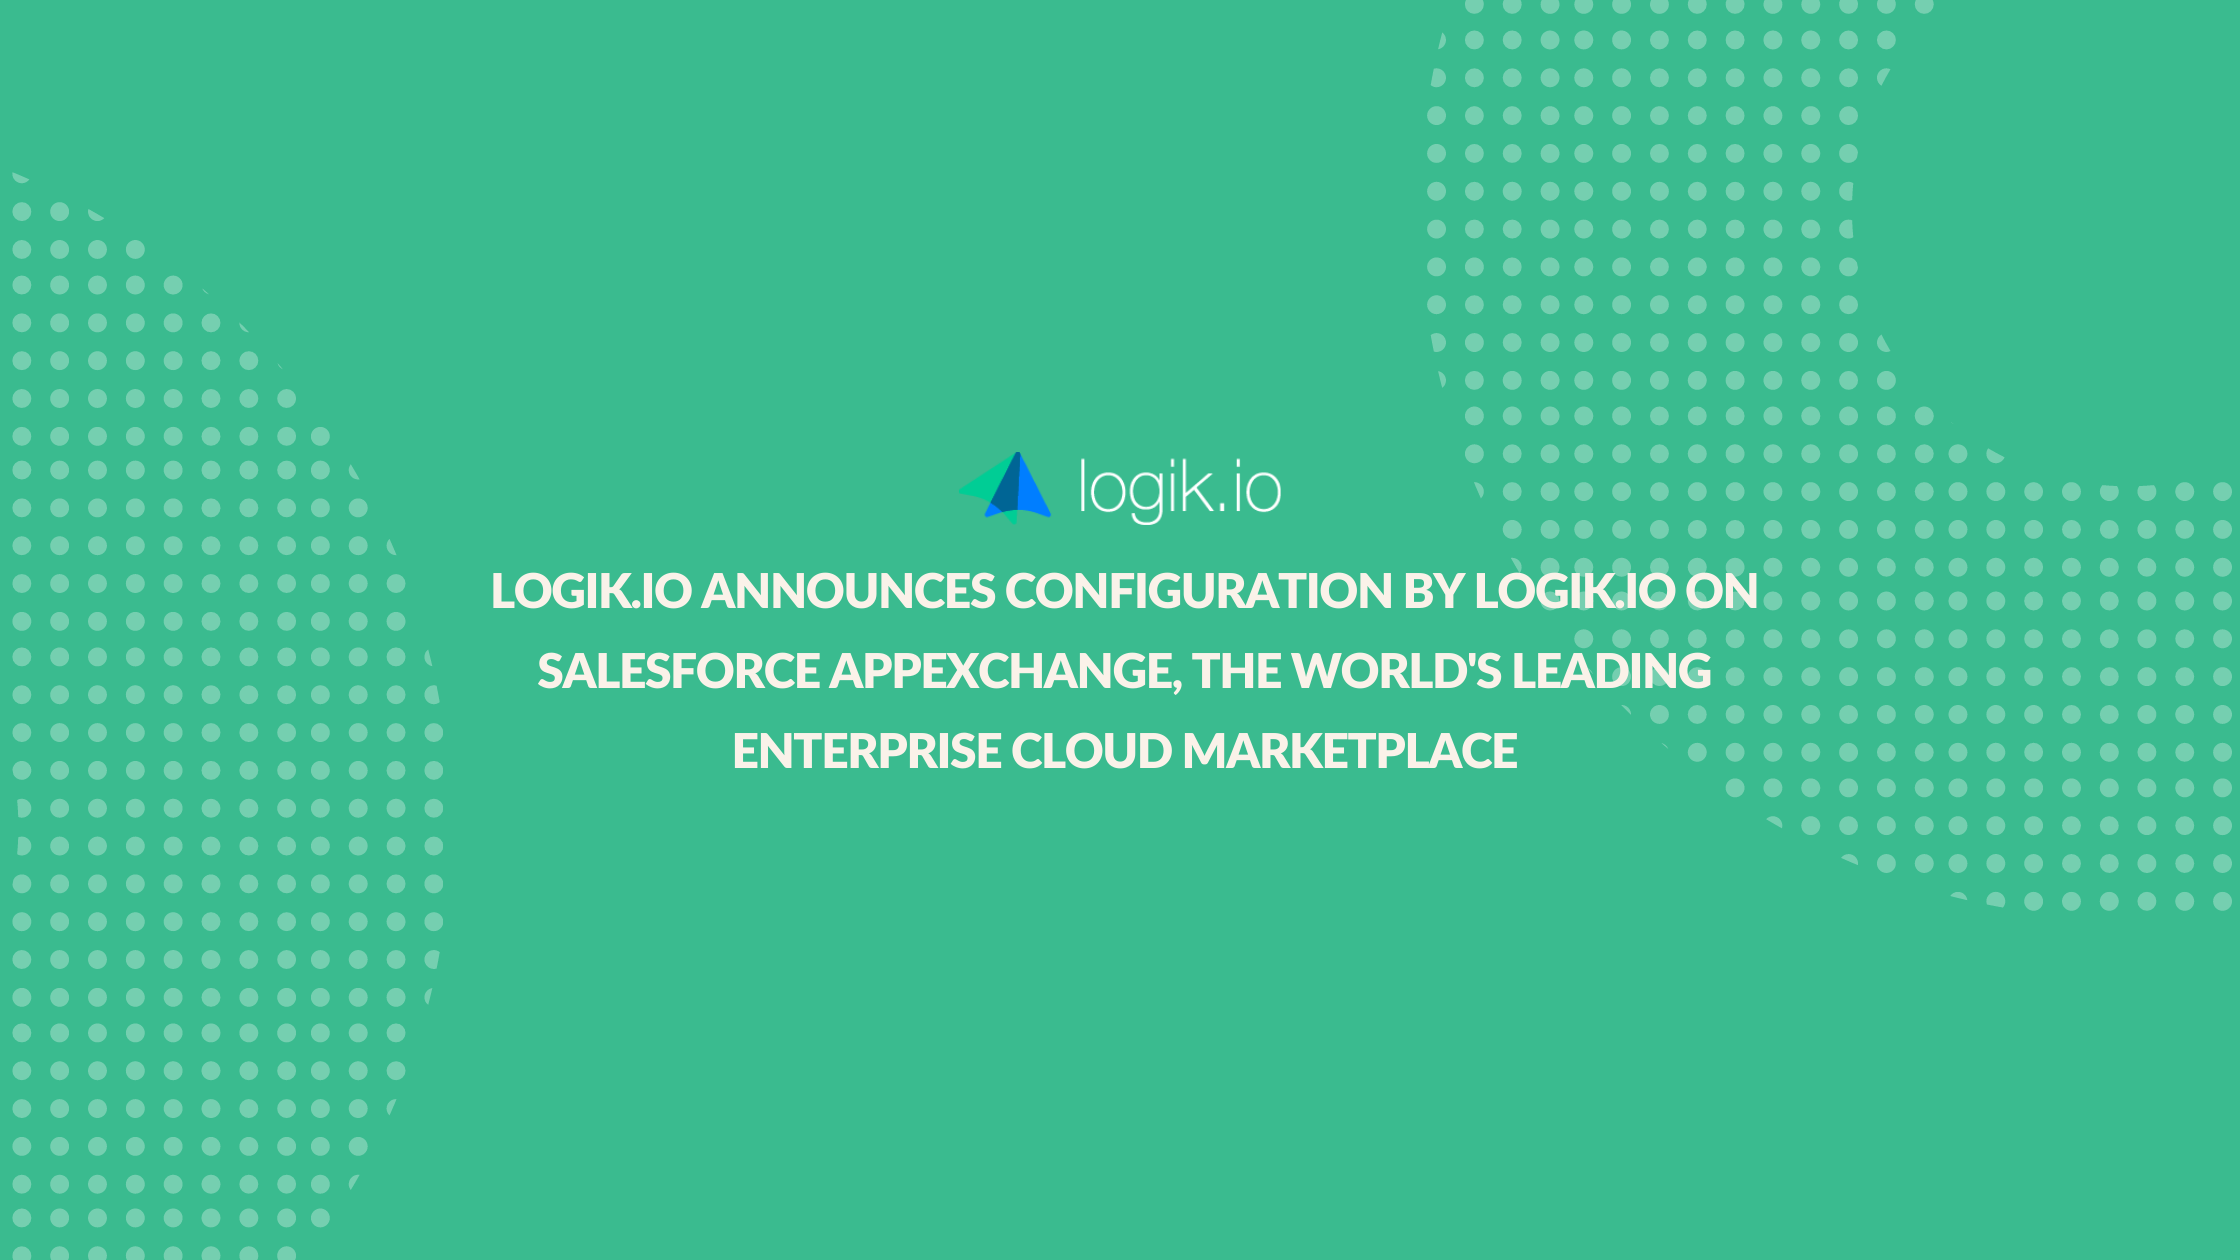 Logik.io Announces Configuration by Logik.io on Salesforce AppExchange